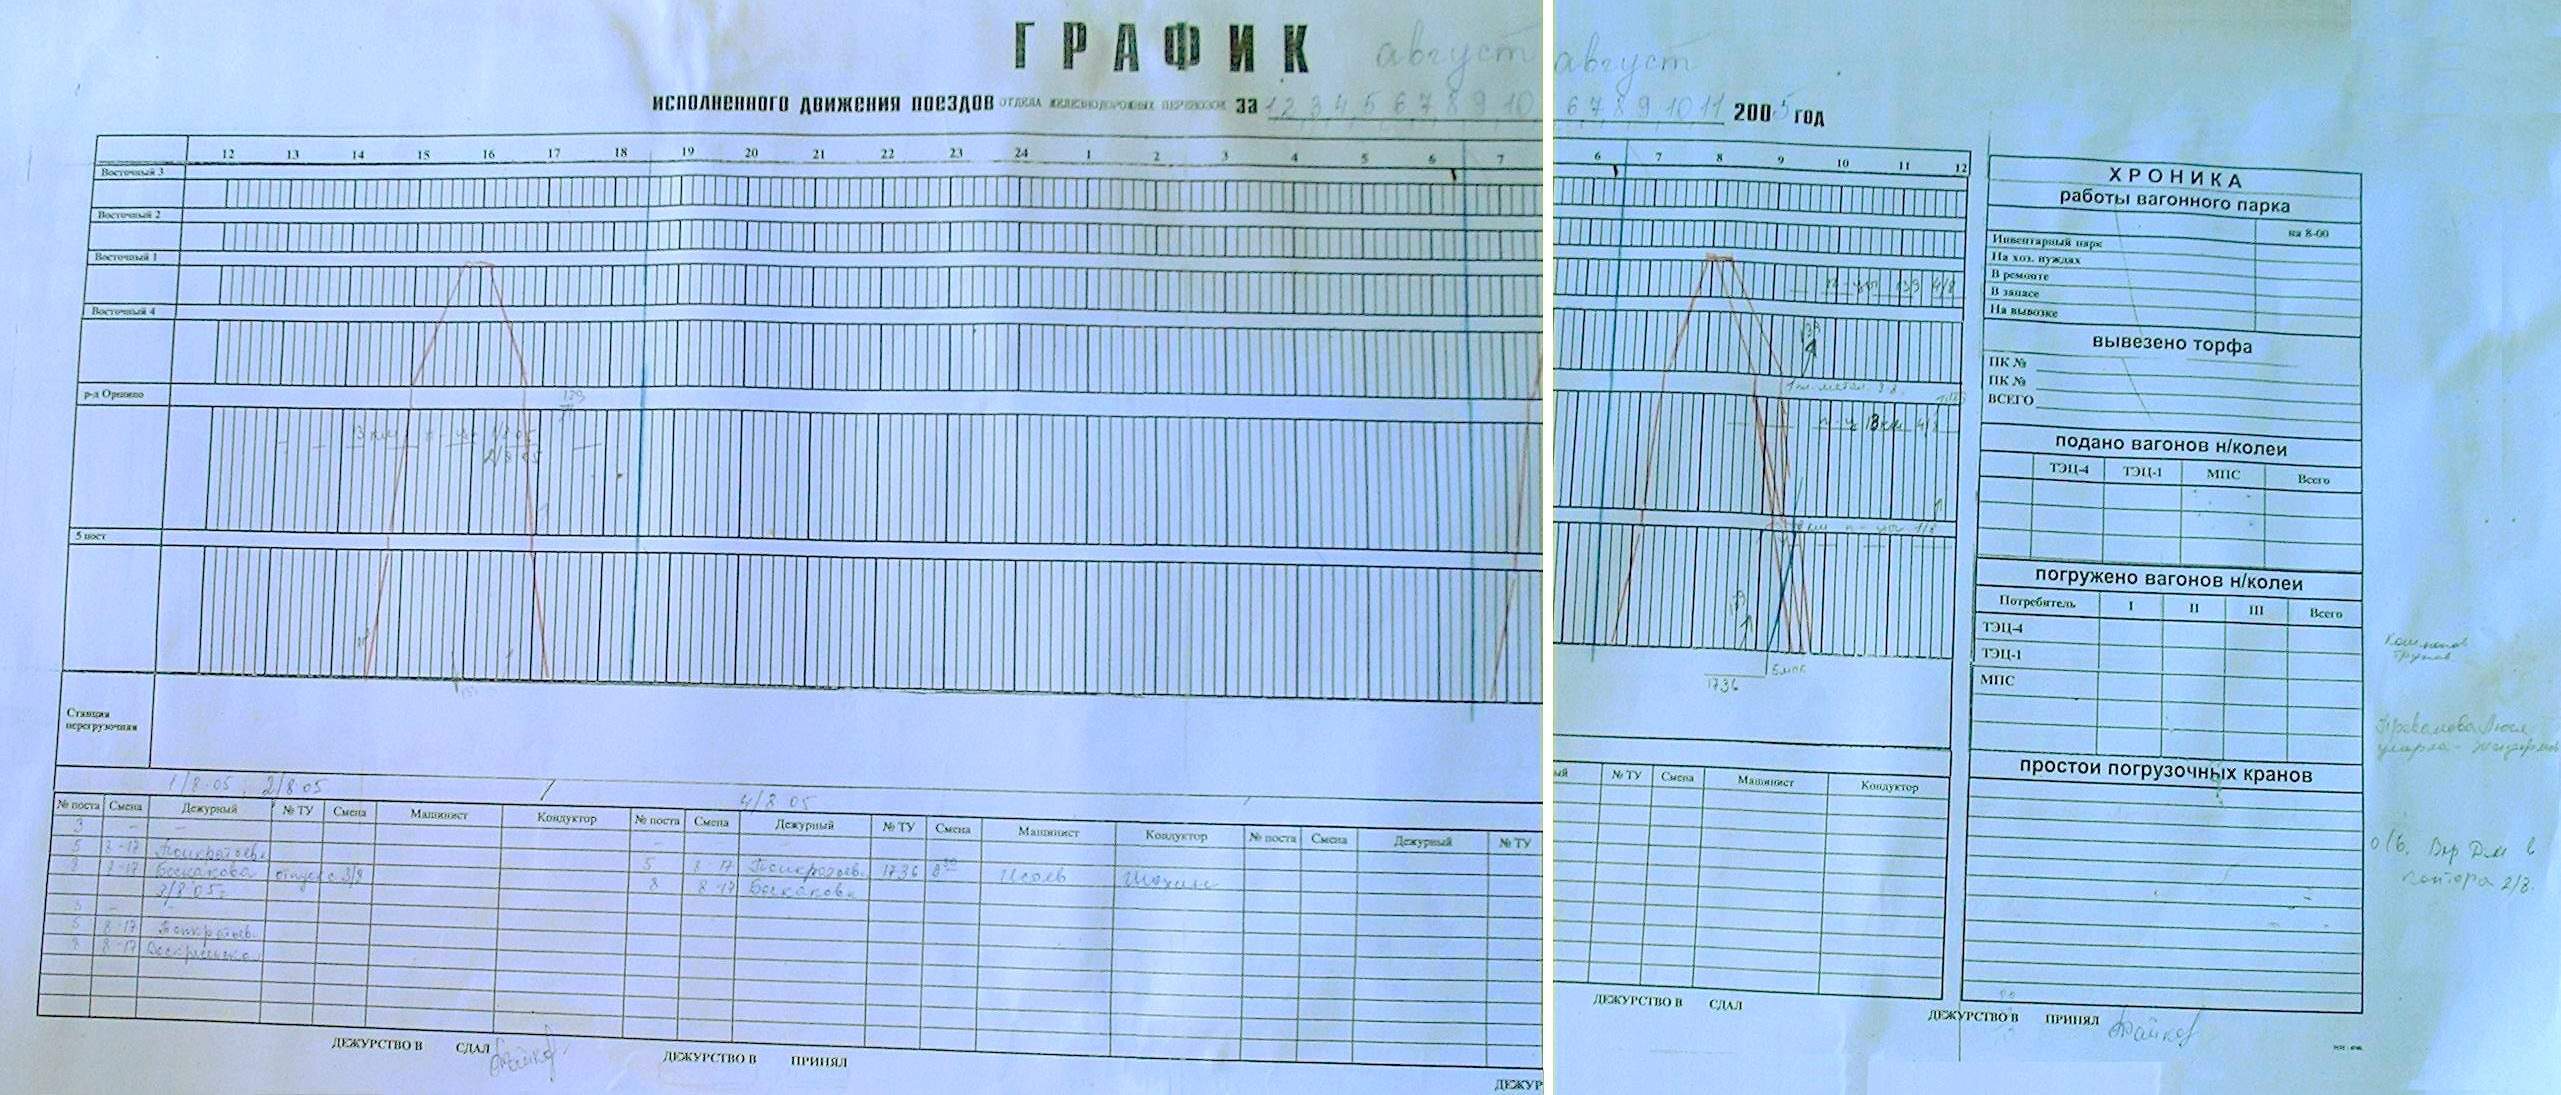 Узкоколейная железная дорога Васильевского ППЖТ - графики исполненного движения поездов (часть 1)